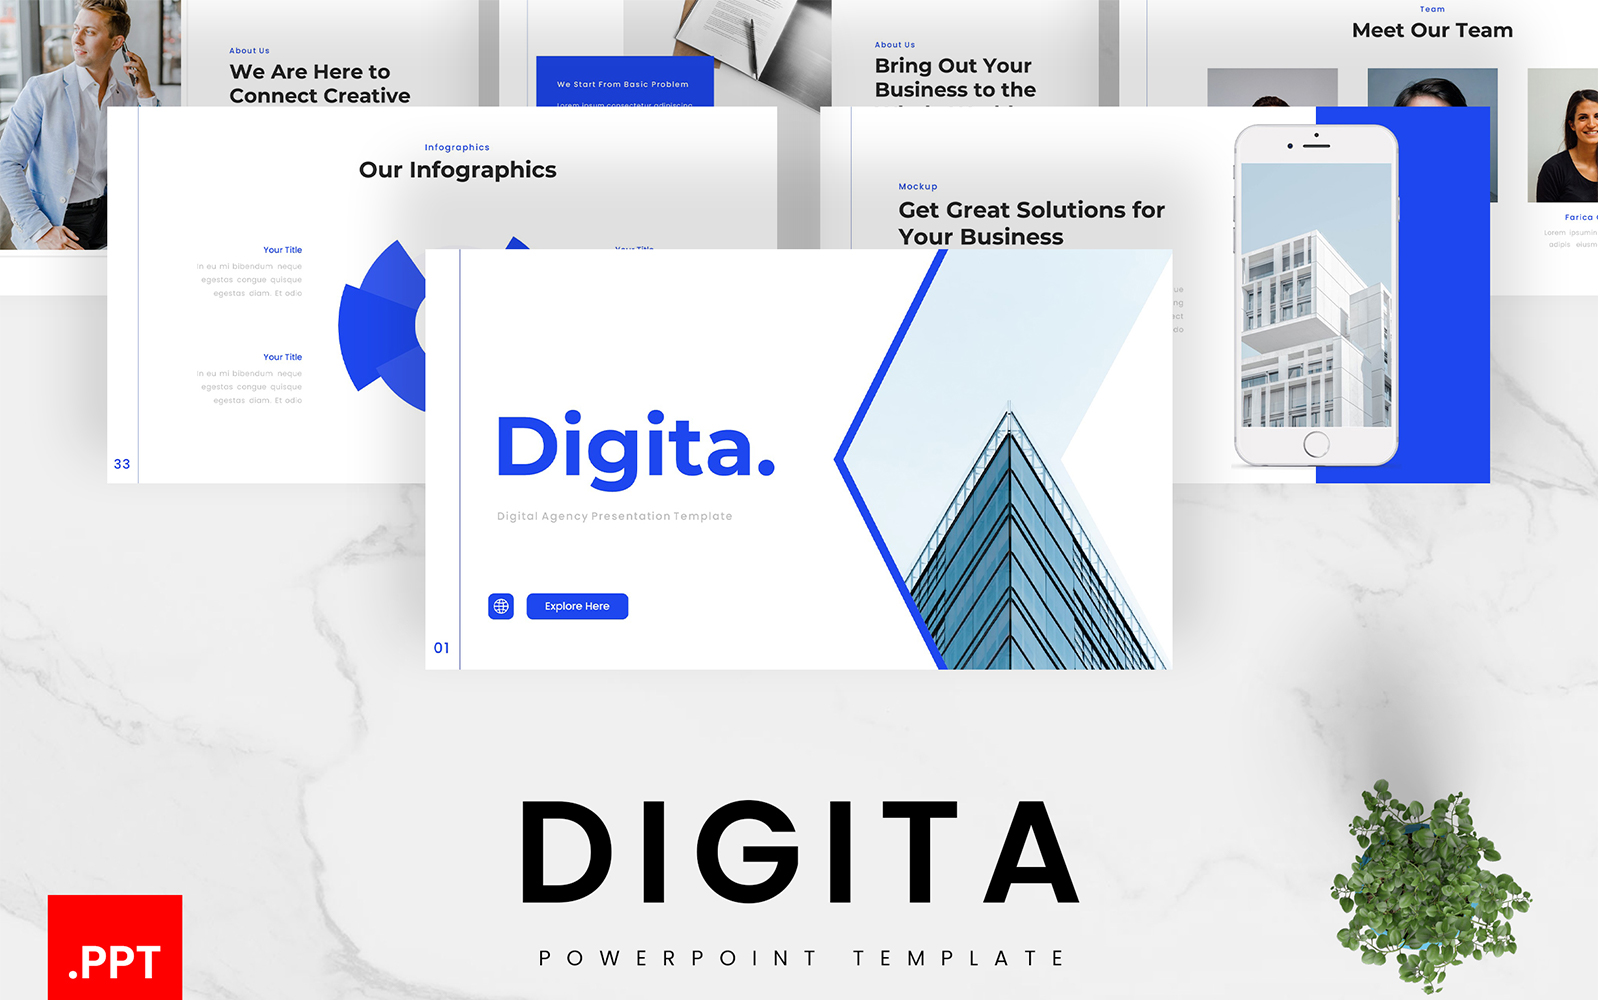 Digita – Digital Agency PowerPoint Template